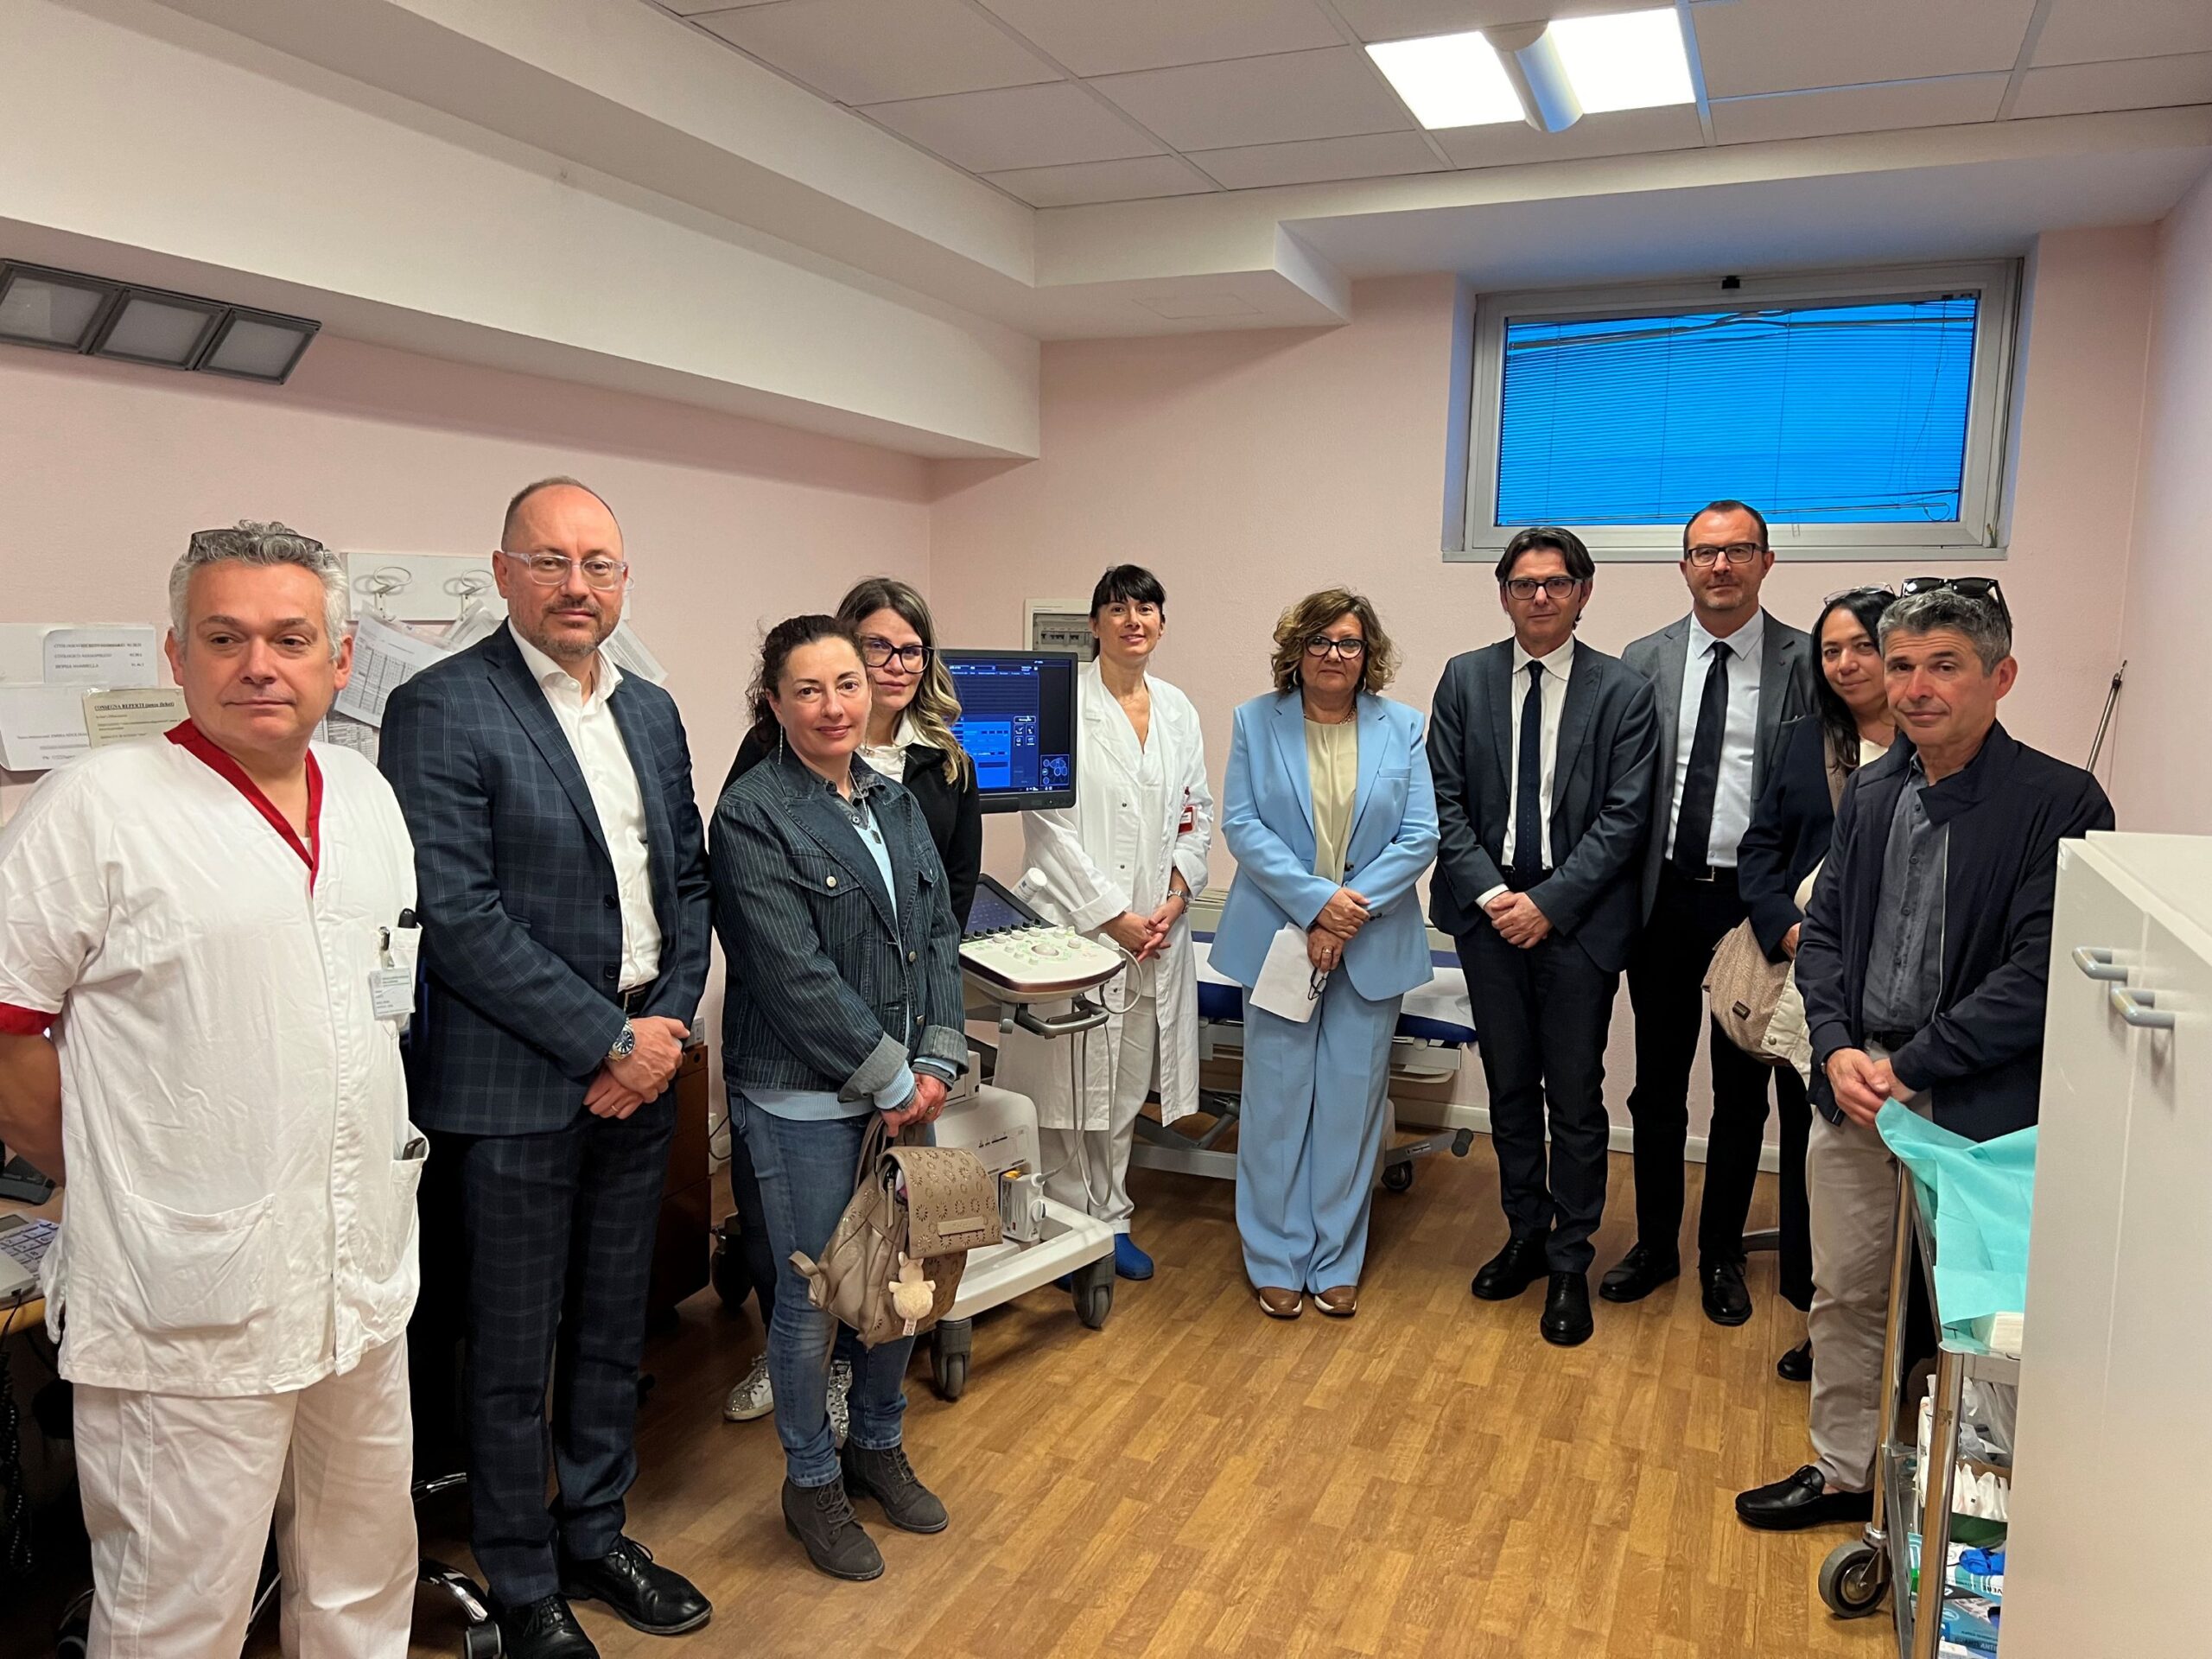 L’ospedale Umberto I ha un nuovo ecografo per la prevenzione oncologica